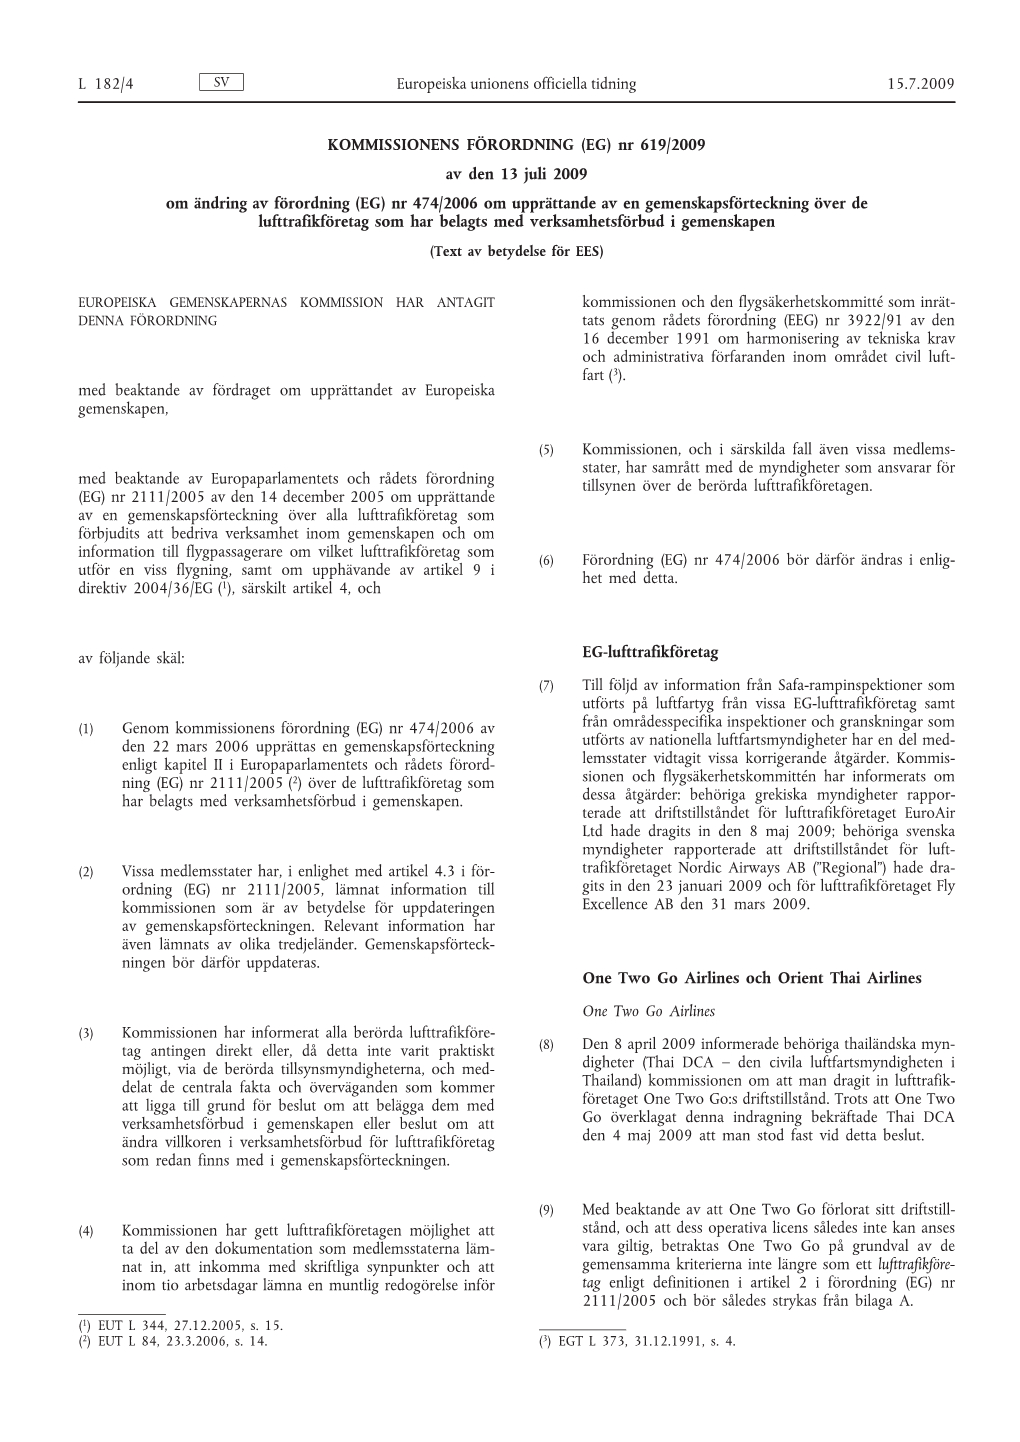 (EG) Nr 619/2009 Av Den 13 Juli 2009 Om Ändring Av Förordning